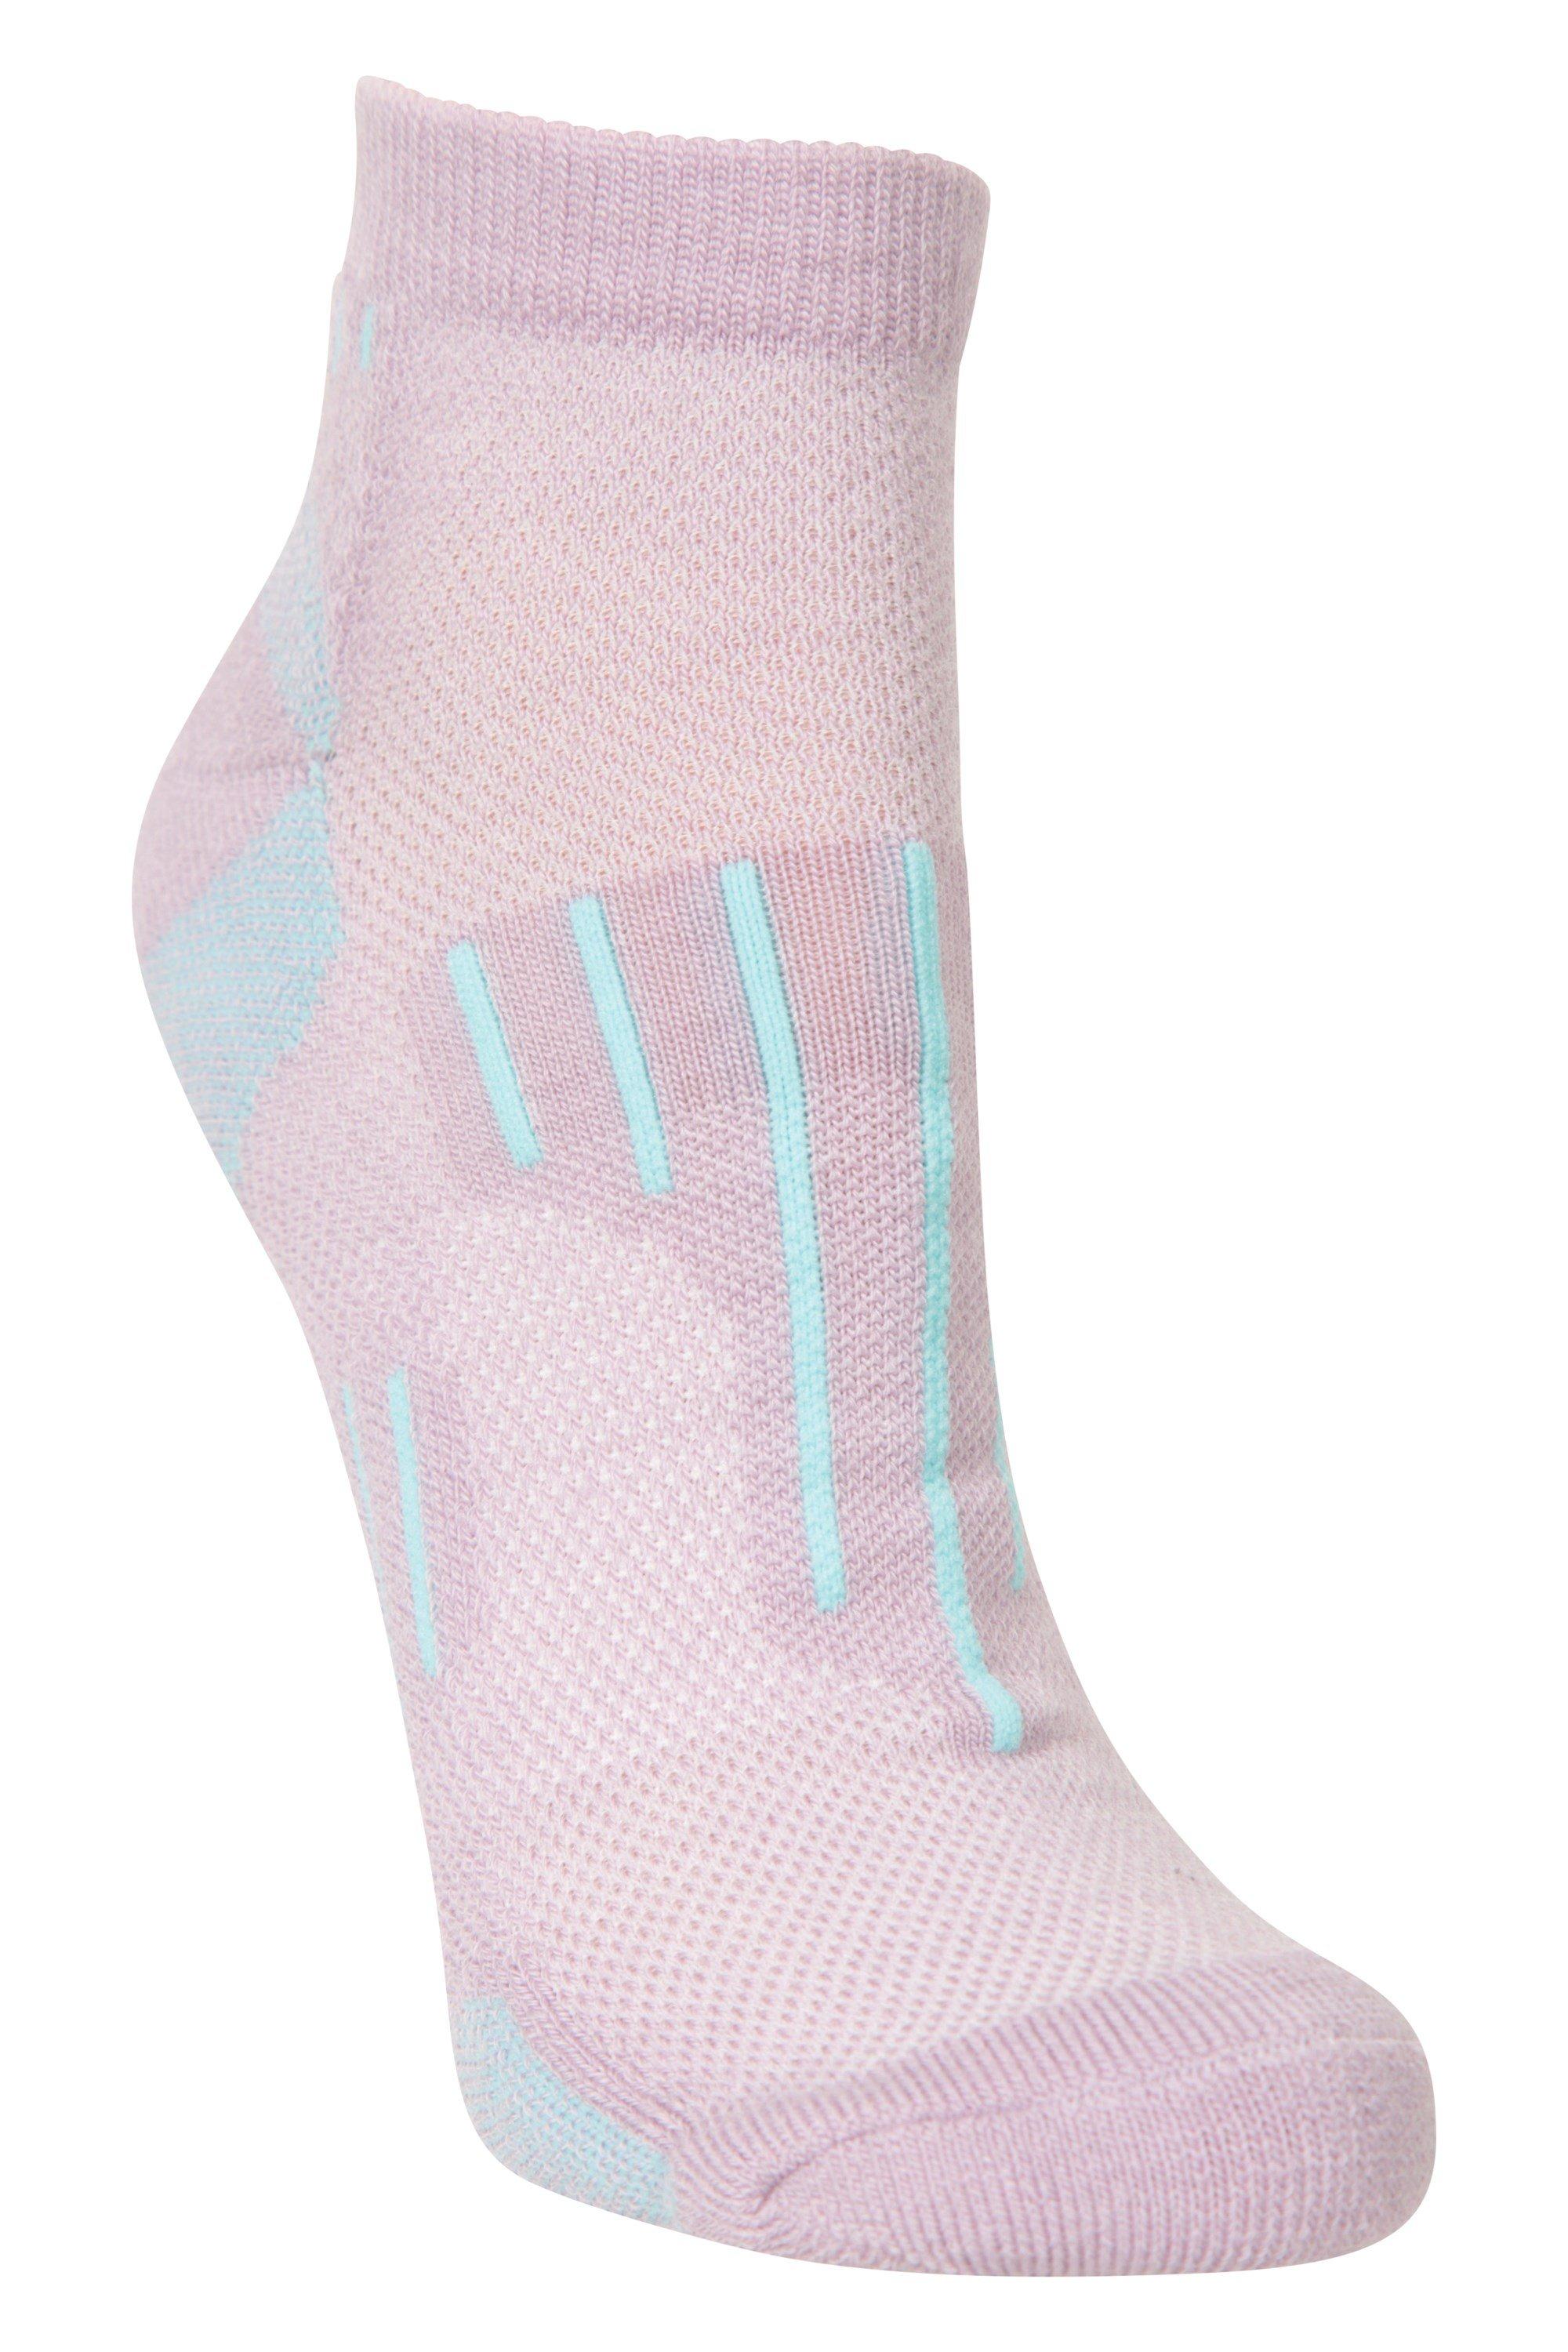 Merino Ankle Socks Padded Breathable  Footwear